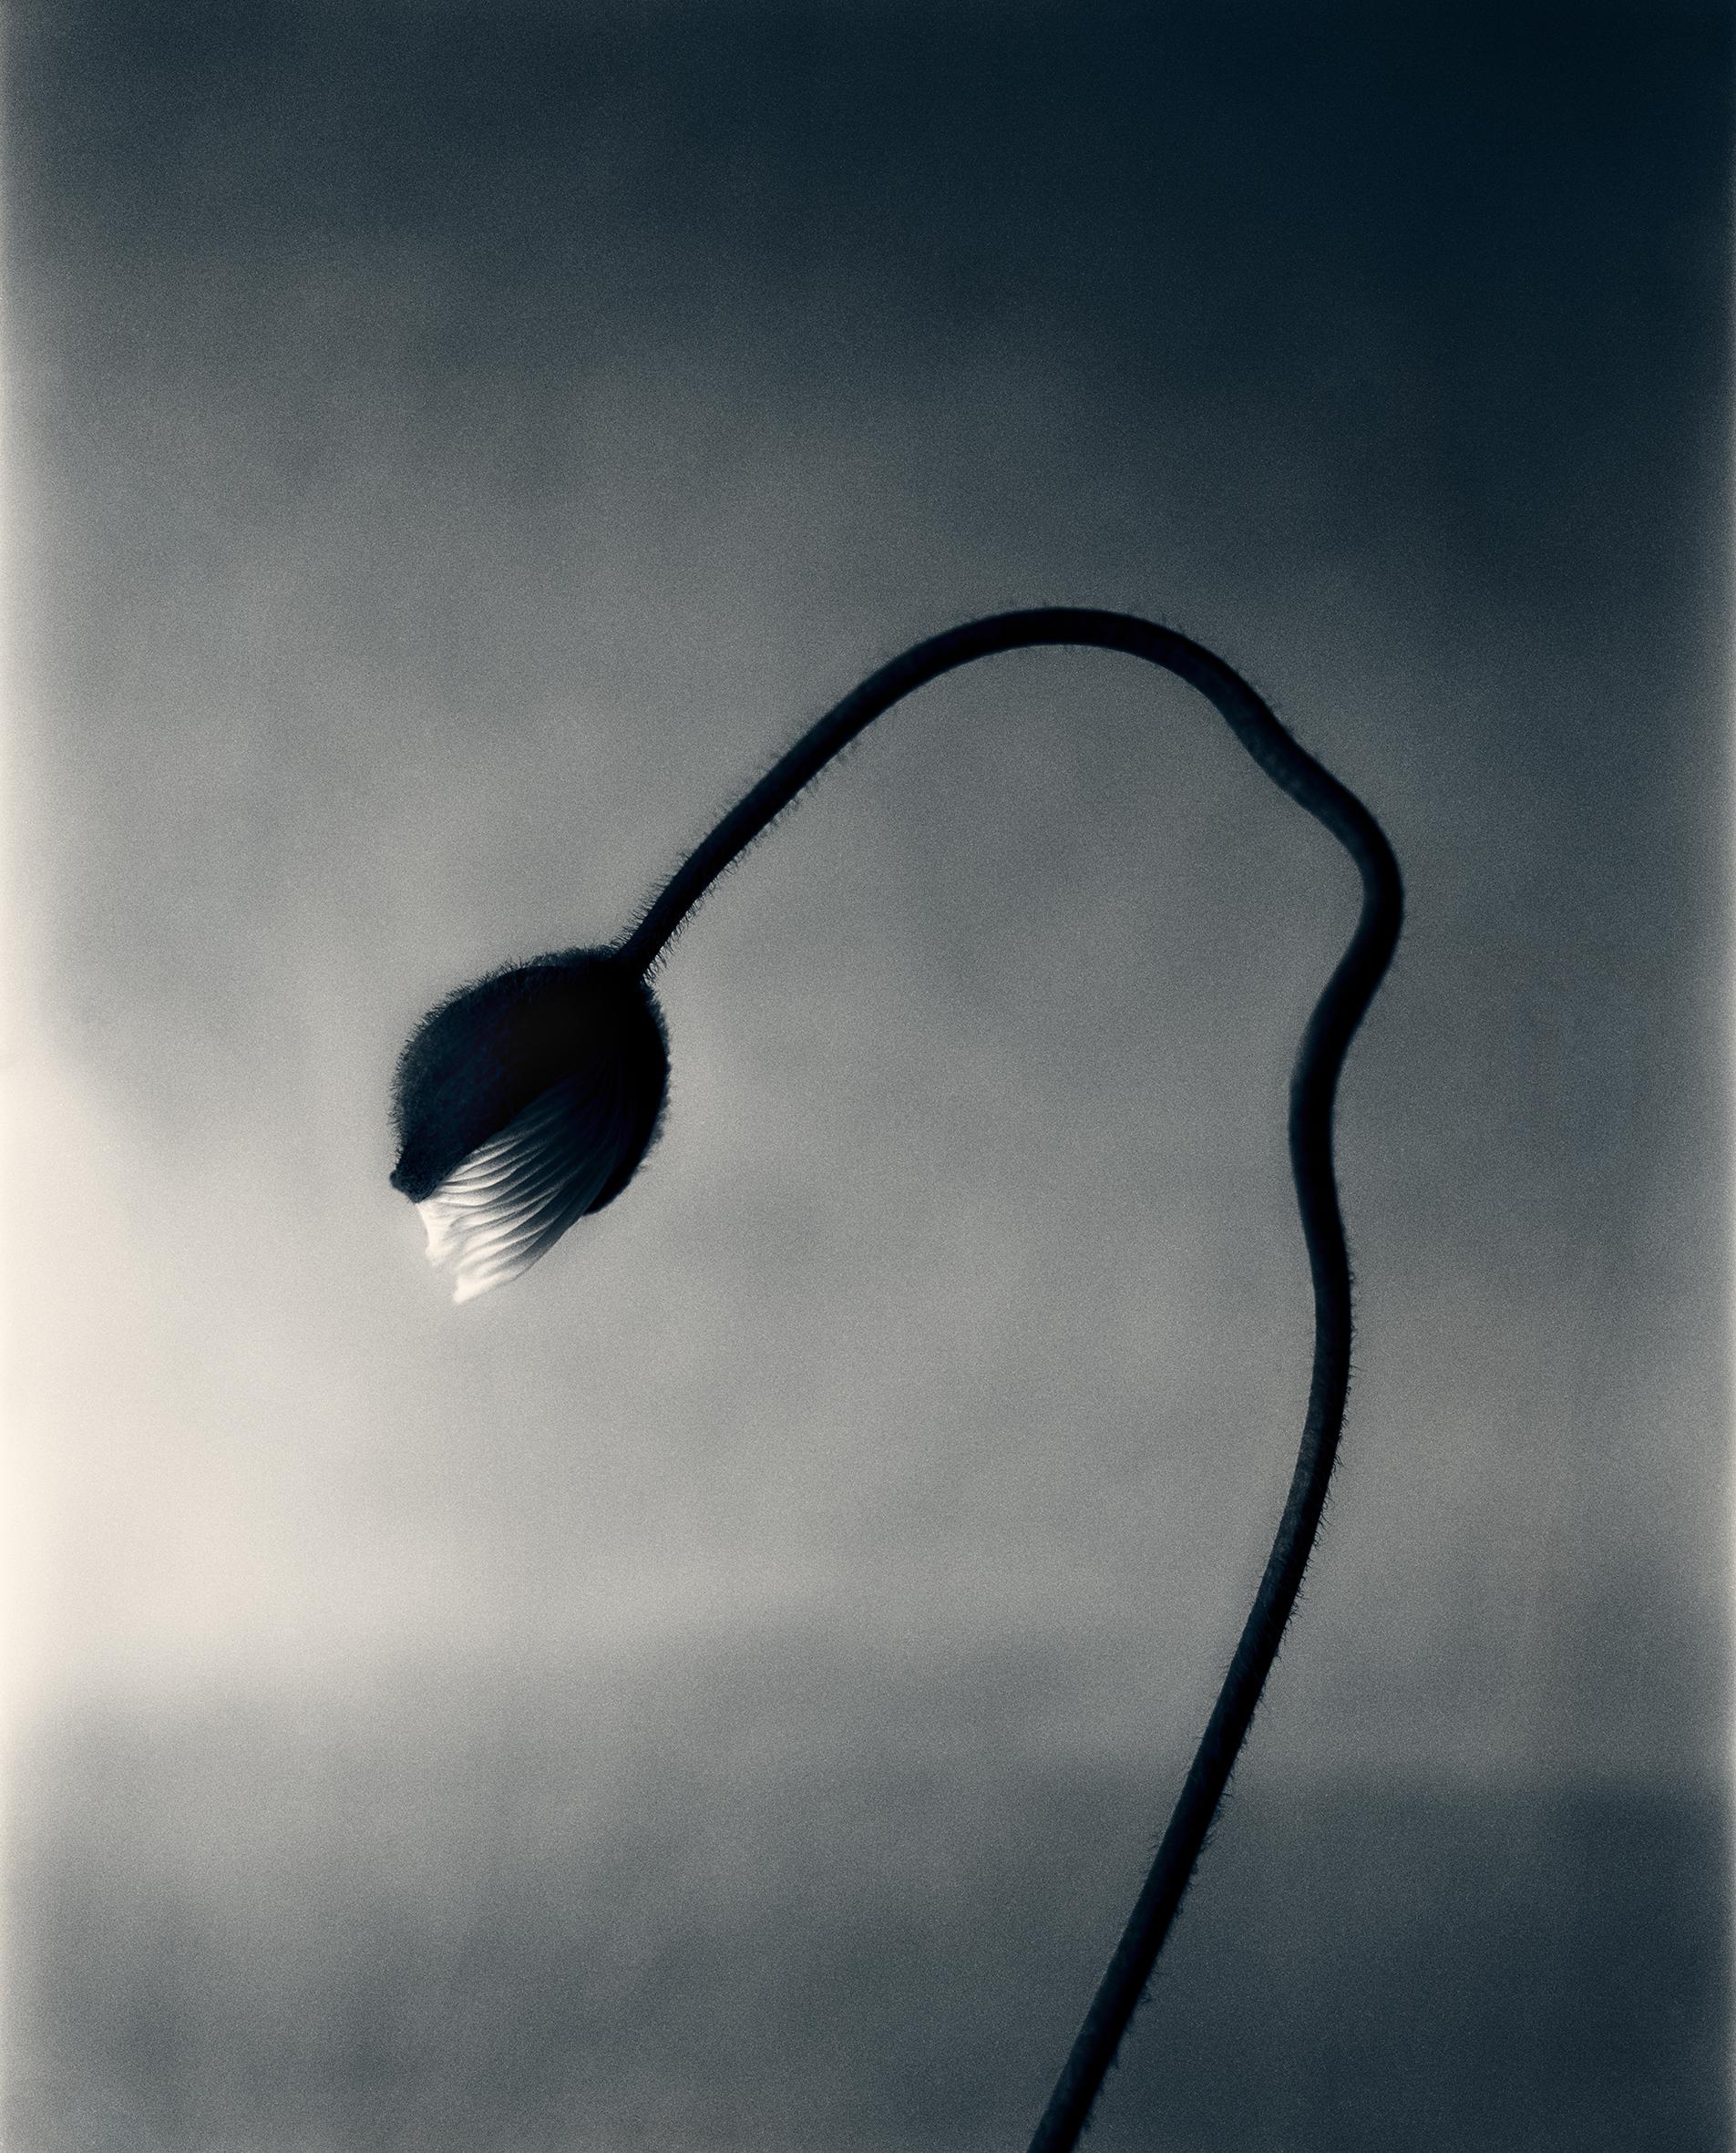 Ugne Pouwell Black and White Photograph – Mohnblumenknospen – Analogue Blumenfotografie, limitierte Auflage von 10 Stück